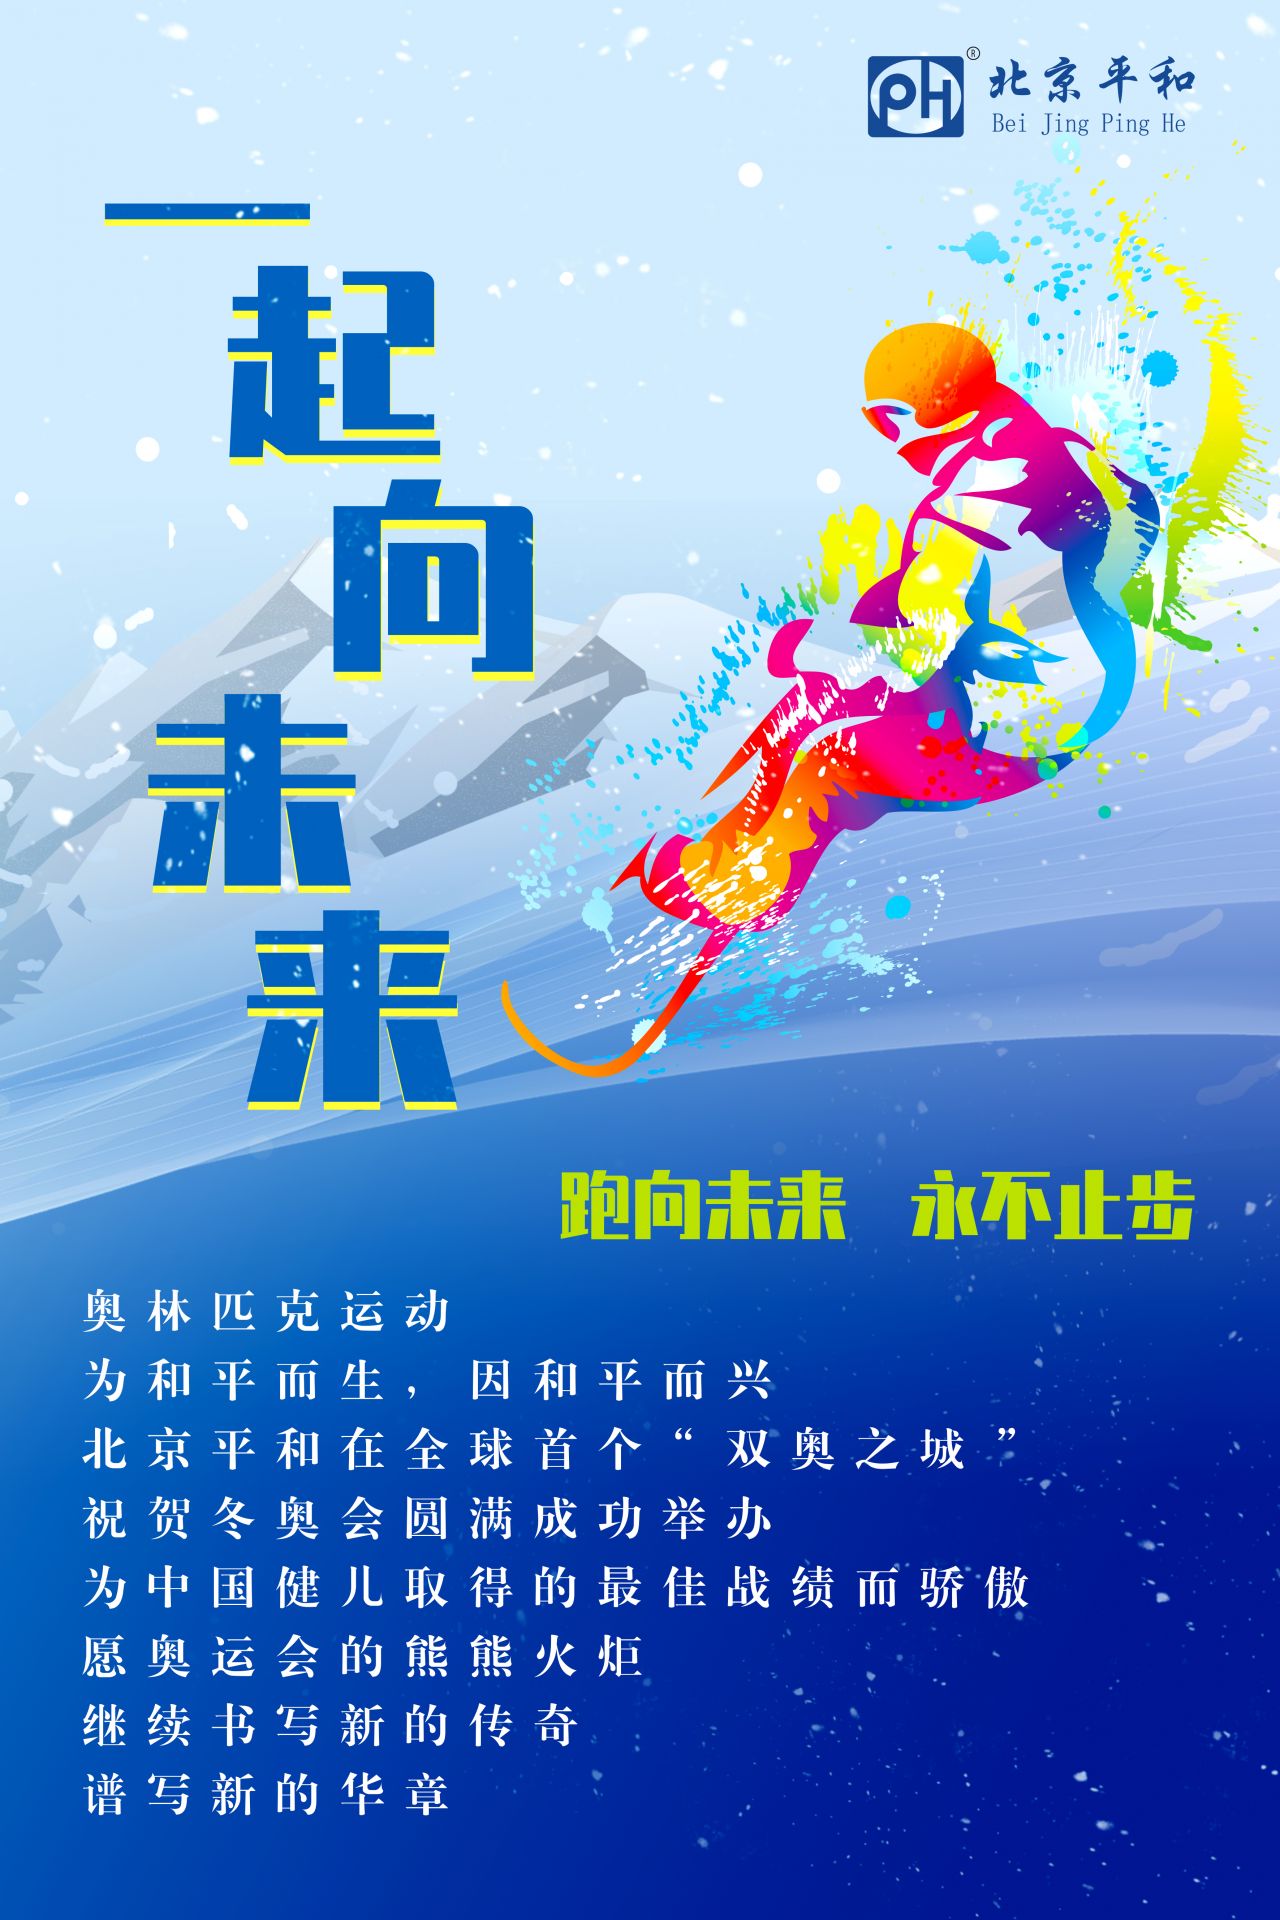 北京平和在全球首个 双奥之城 祝贺冬奥会圆满成功举办